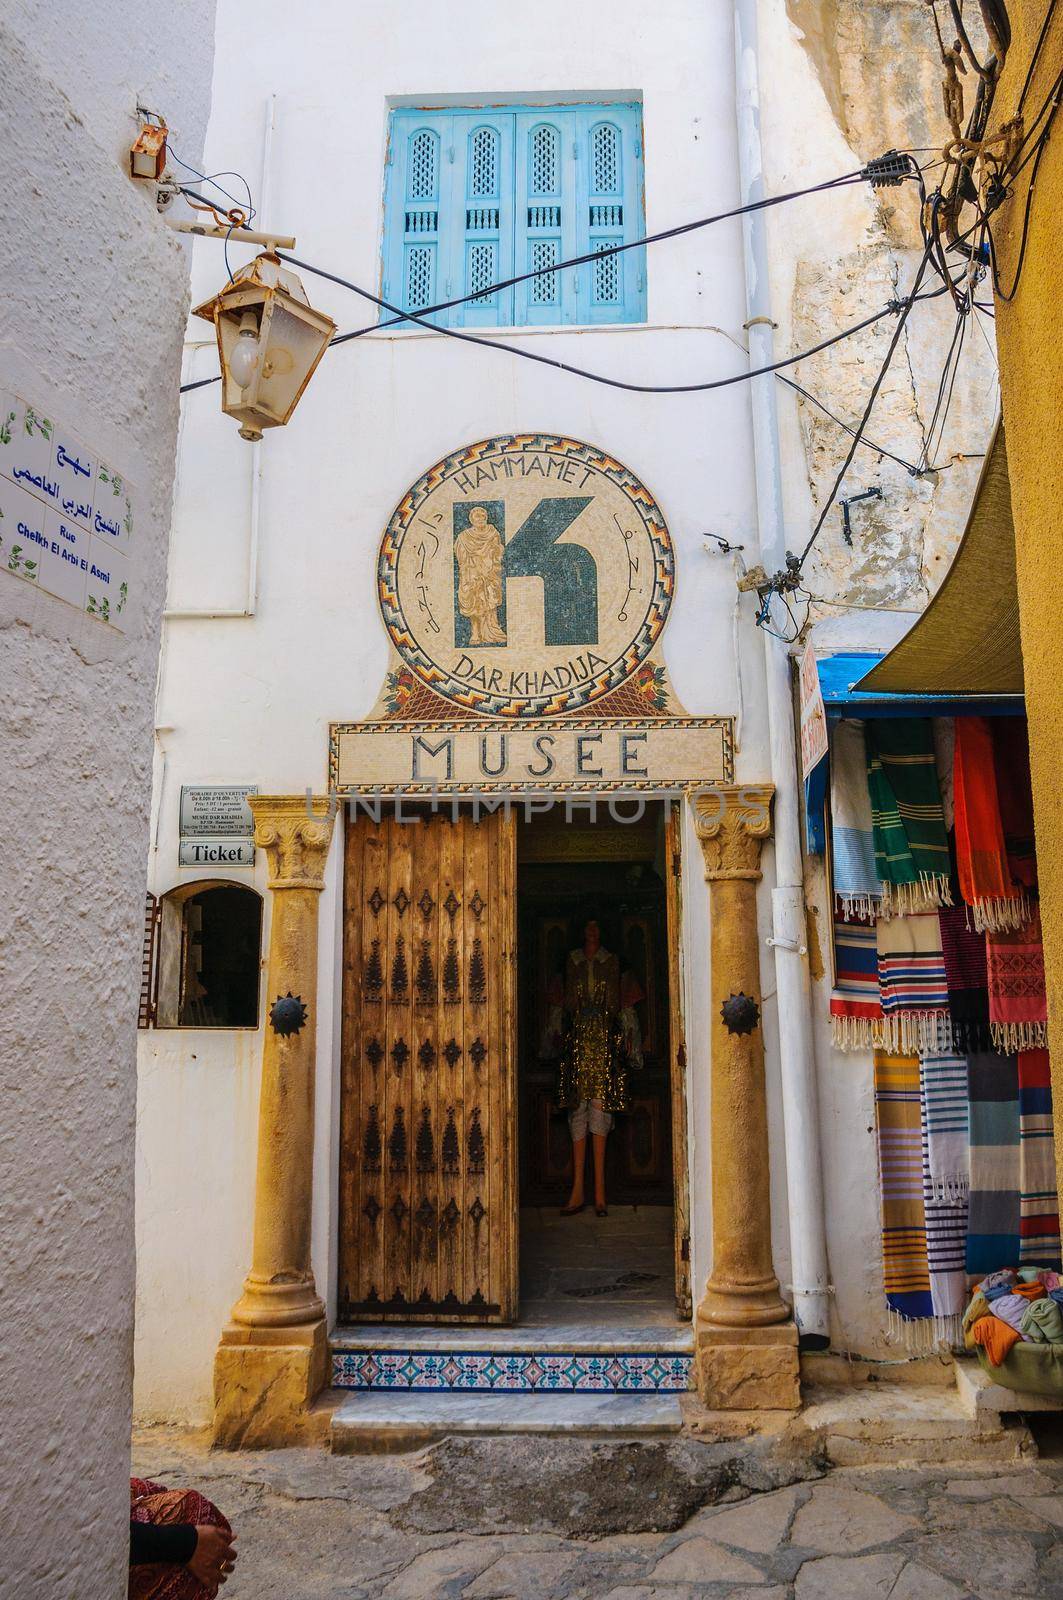 HAMMAMET, TUNISIA - Oct 2014: Museum in narrow street of Medina on October 6, 2014 by Eagle2308